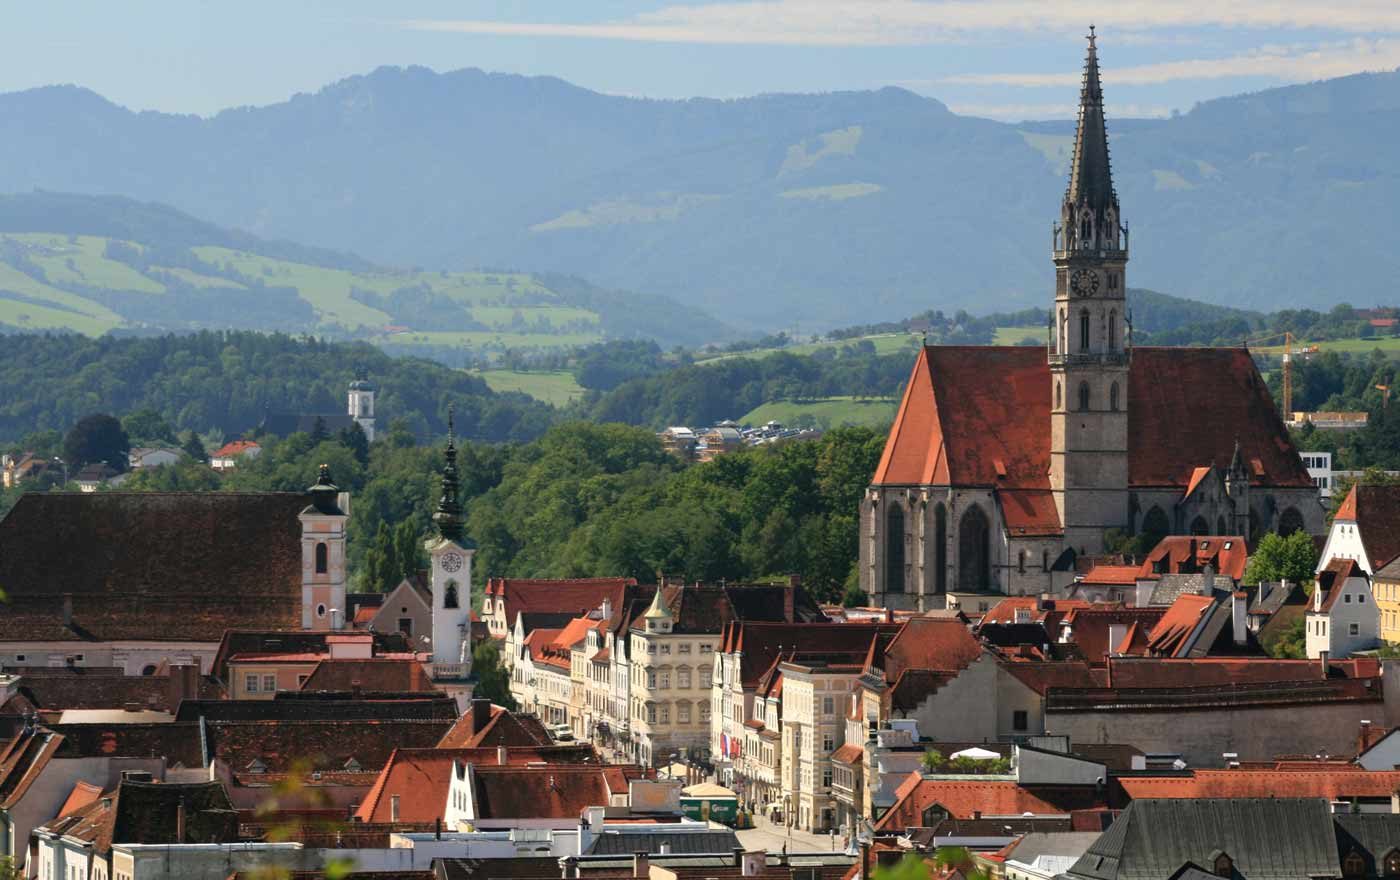 Angesichts der Geschichte der Stadt wurde Steyr für das Jahr 2017 der Titel „Reformationsstadt Europas“ verliehen. Foto: wikimedia/Christoph Waghubinger